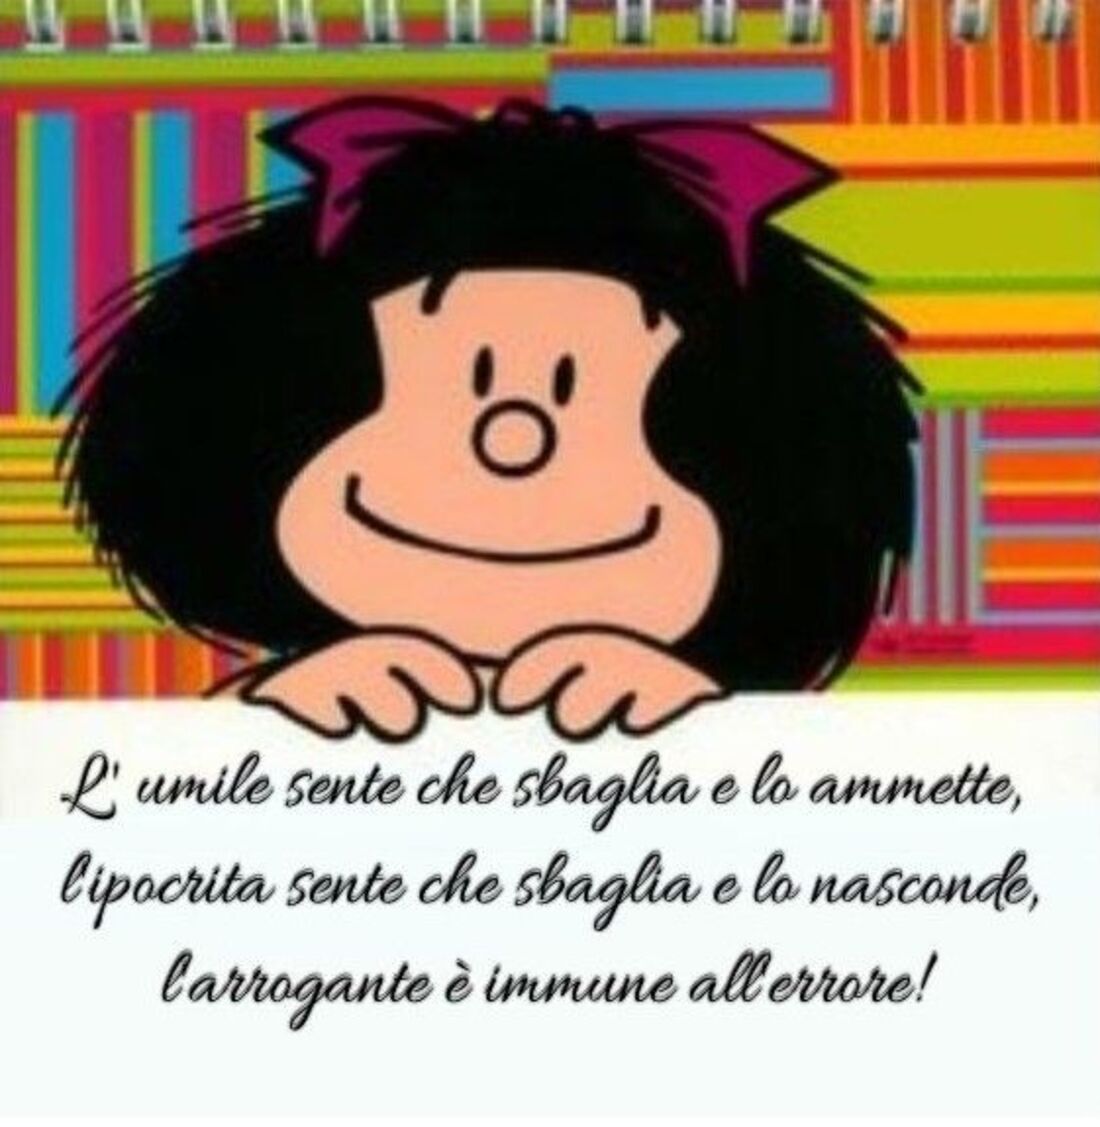 "L'umile sente che sbaglia e lo ammette, l'ipocrita sente che sbaglia e lo nasconde, l'arrogante è immune all'errore!" - Mafalda